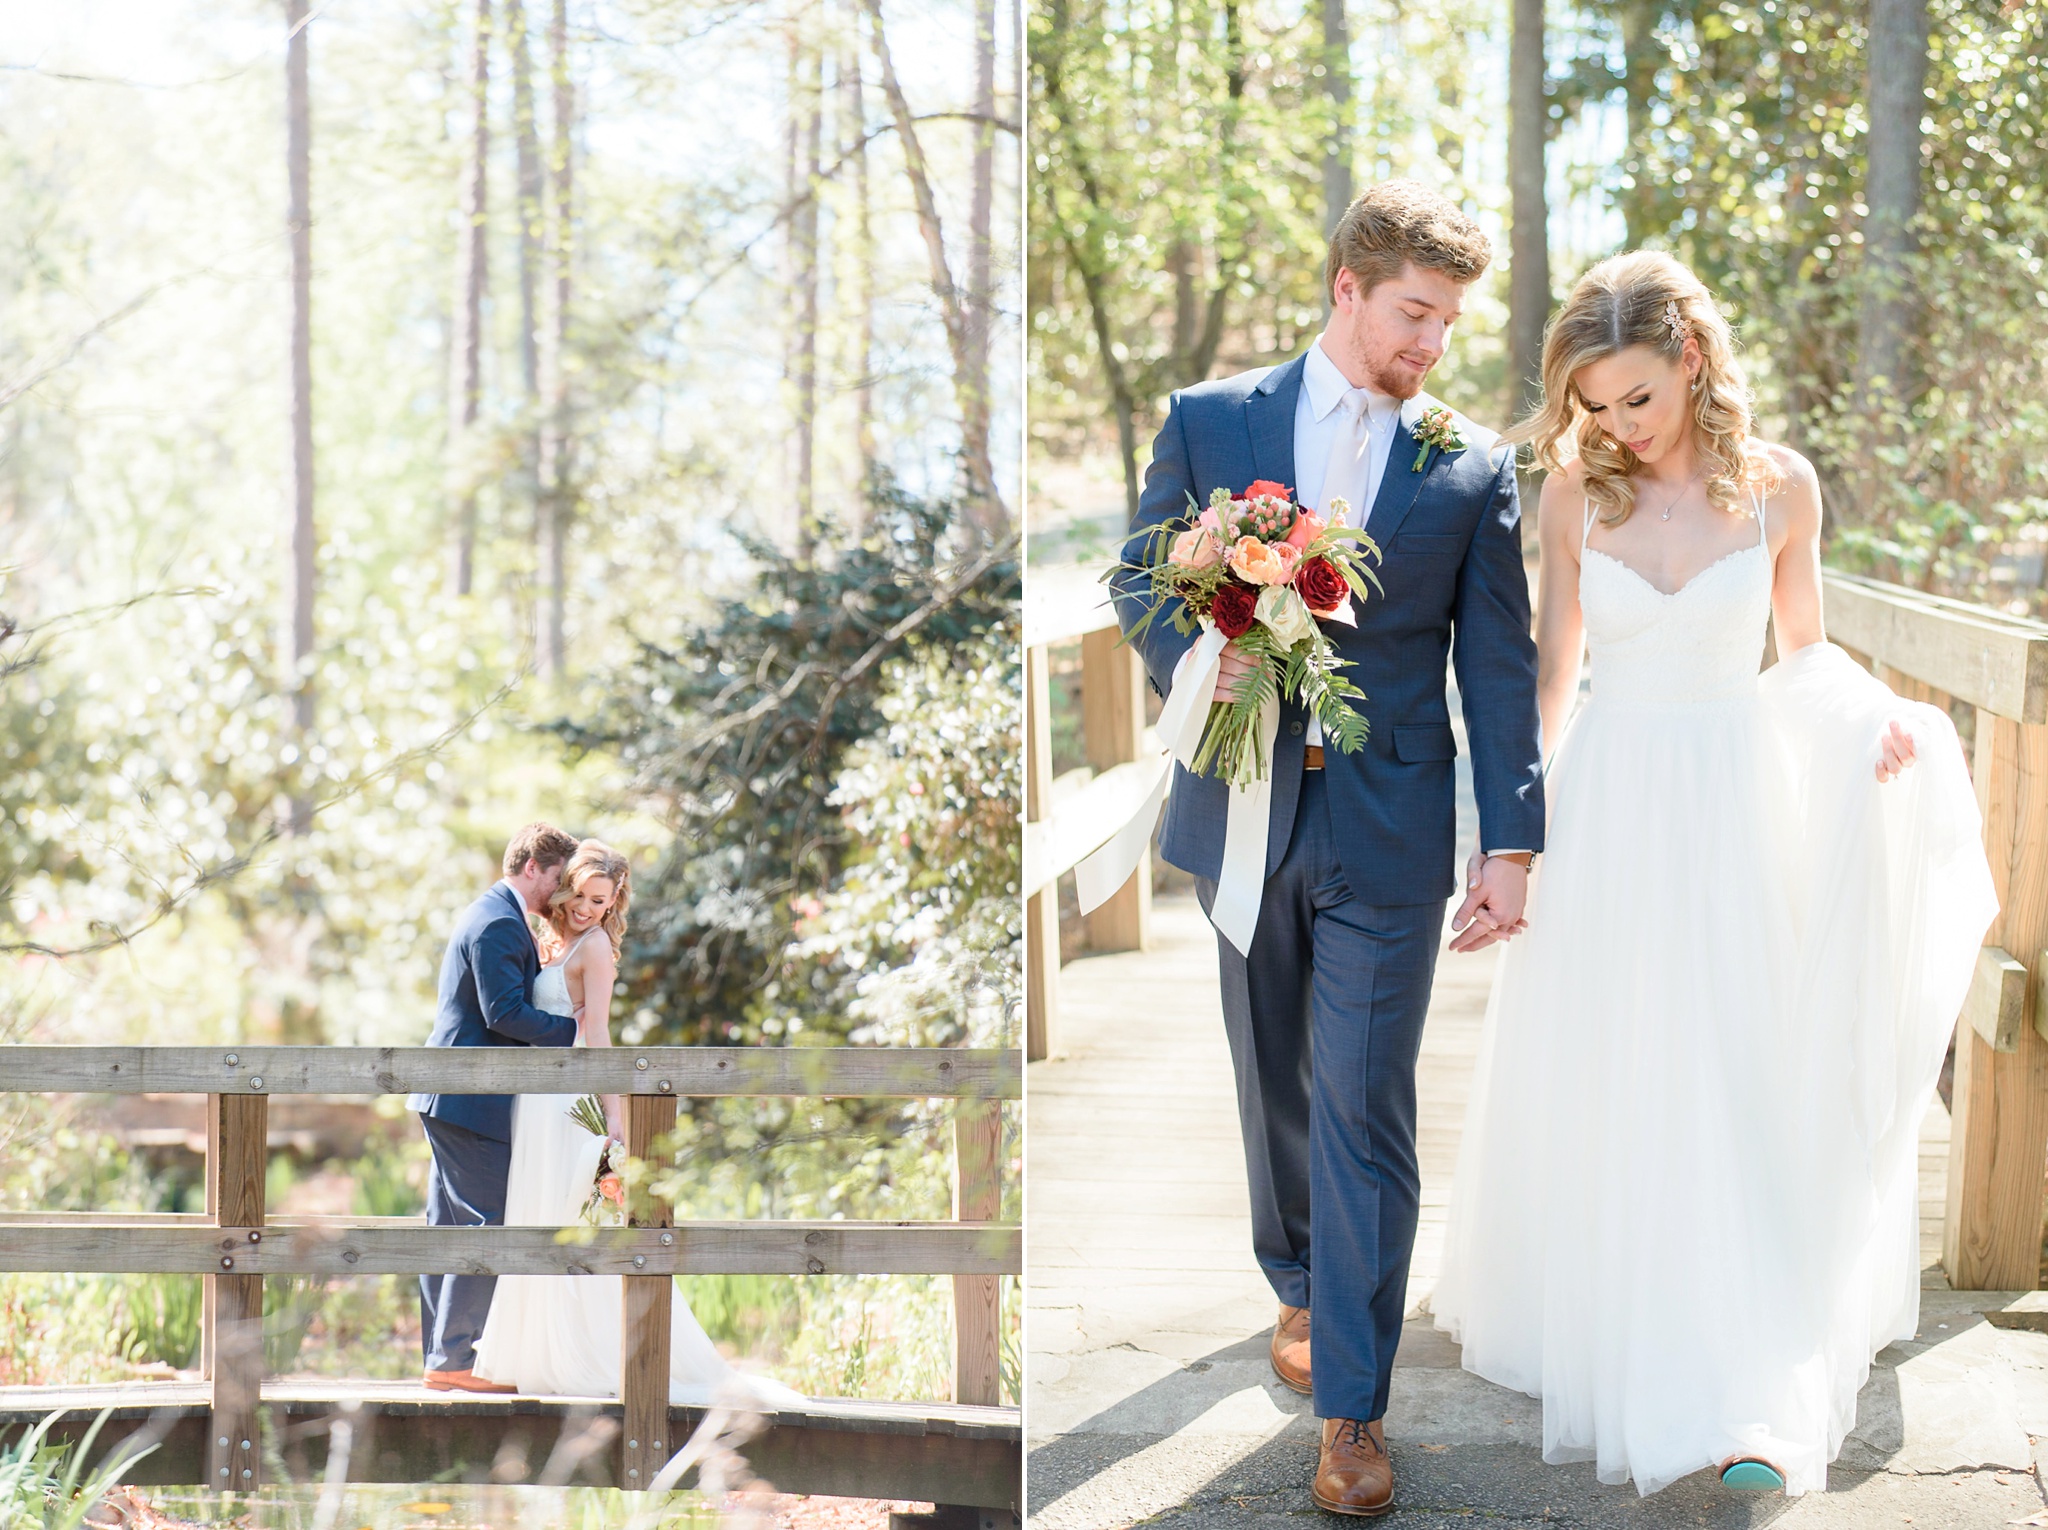 Aldridge Gardens Spring Wedding | Birmingham Alabama Wedding Photographers_0030.jpg